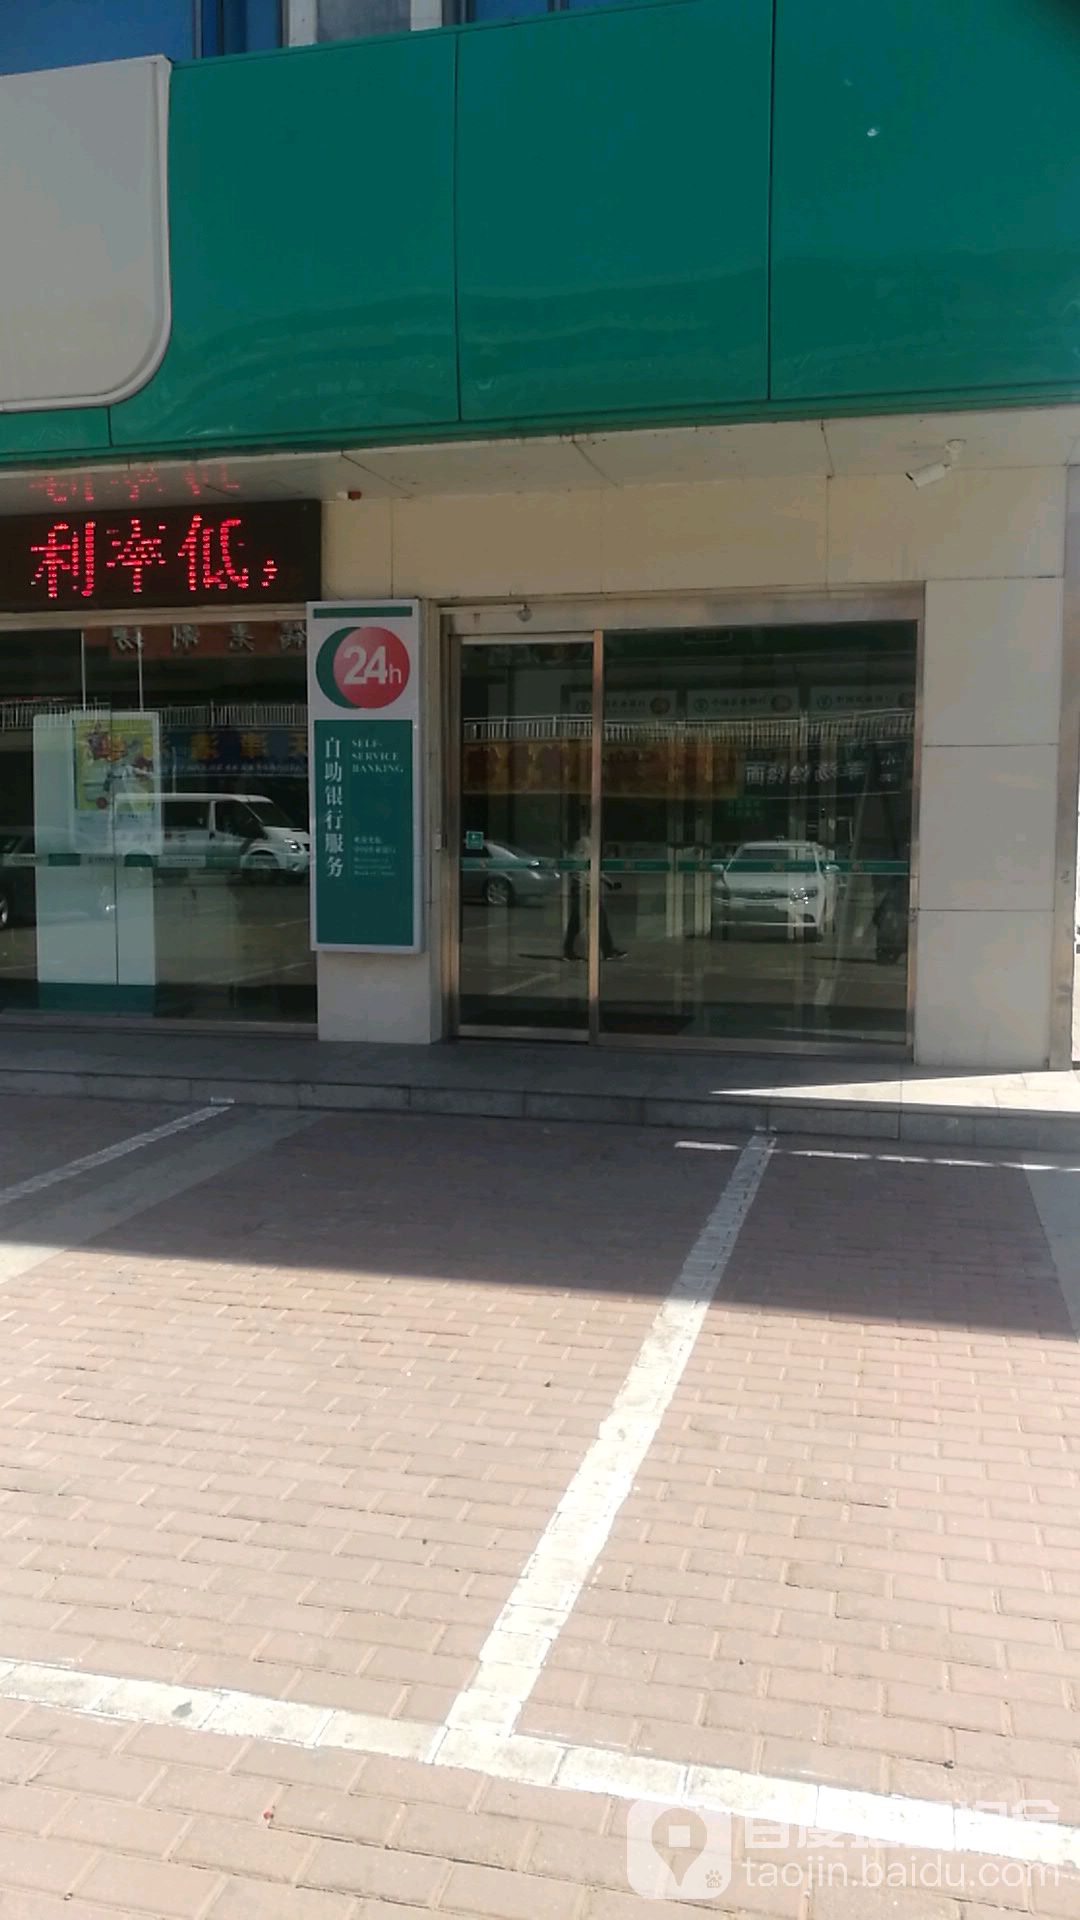 中國農業銀行24小時自助銀行(神木迎賓分理處)